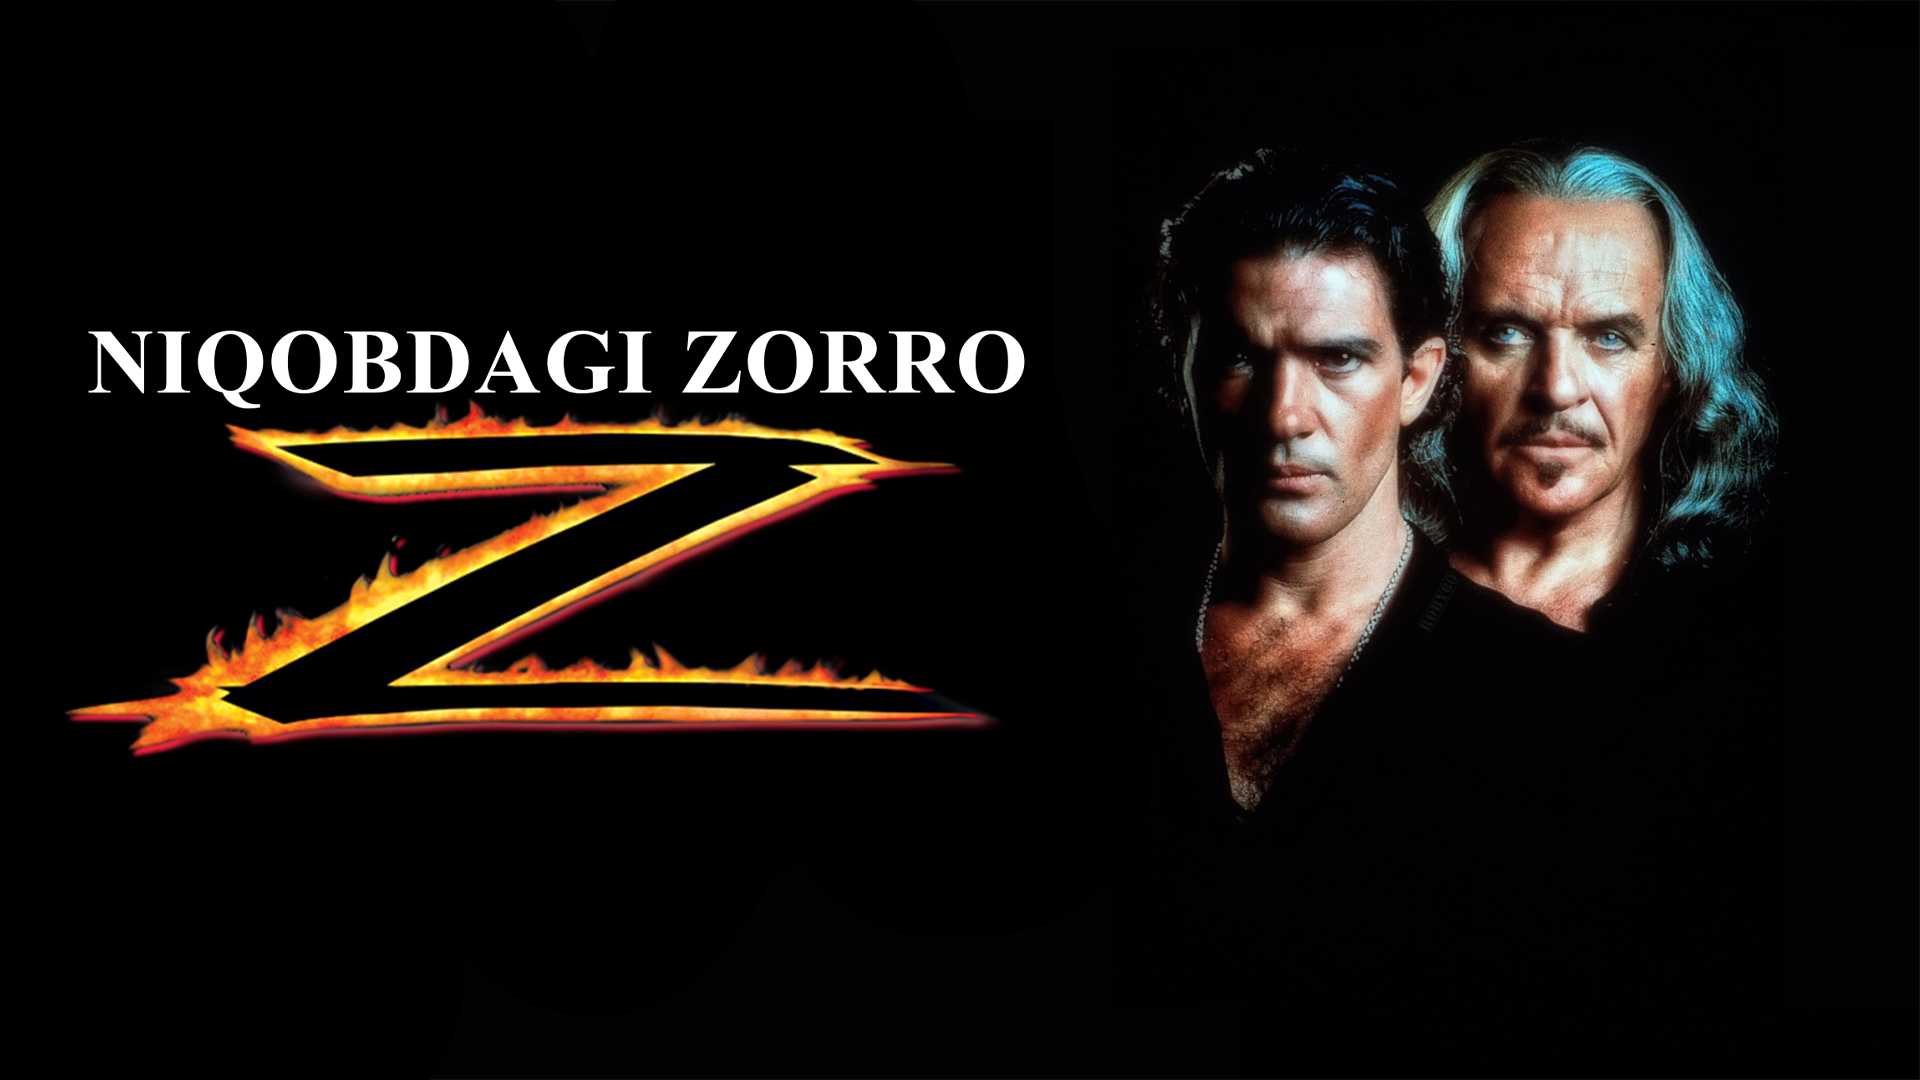 NIqobdagi Zorro